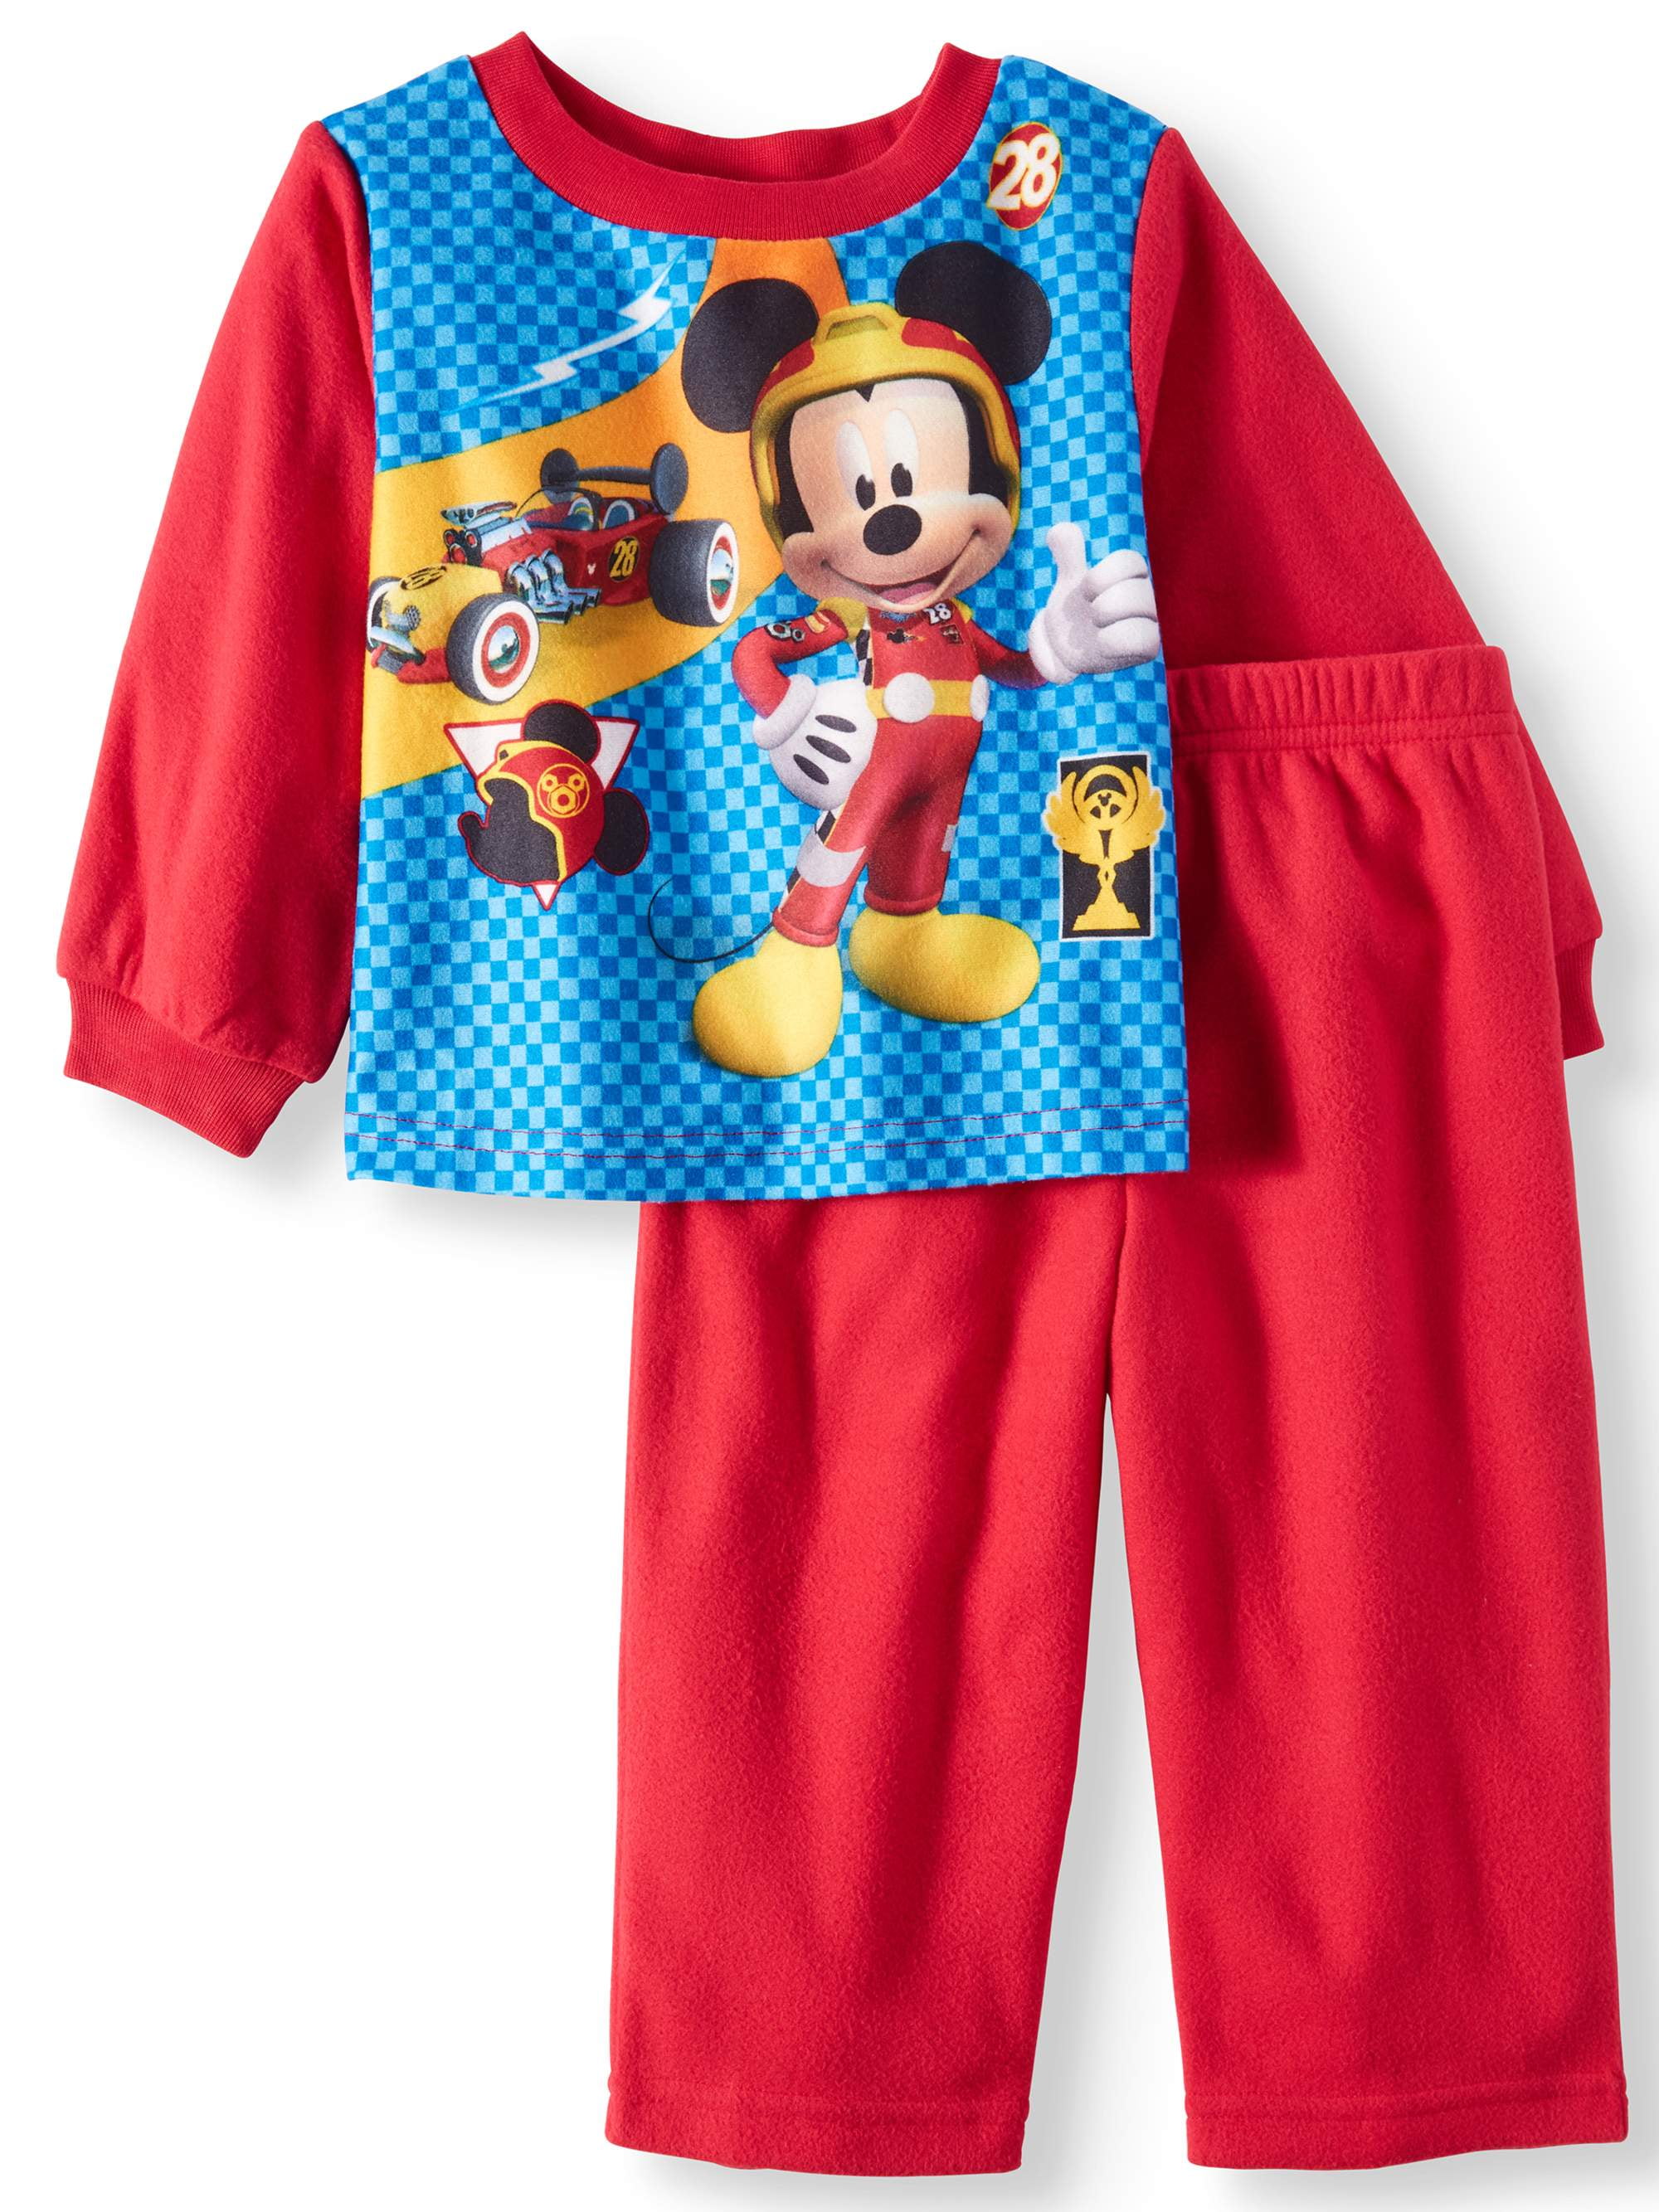 Toddler Boys Mickey Mouse 2pc Pajama Sleepware Set 